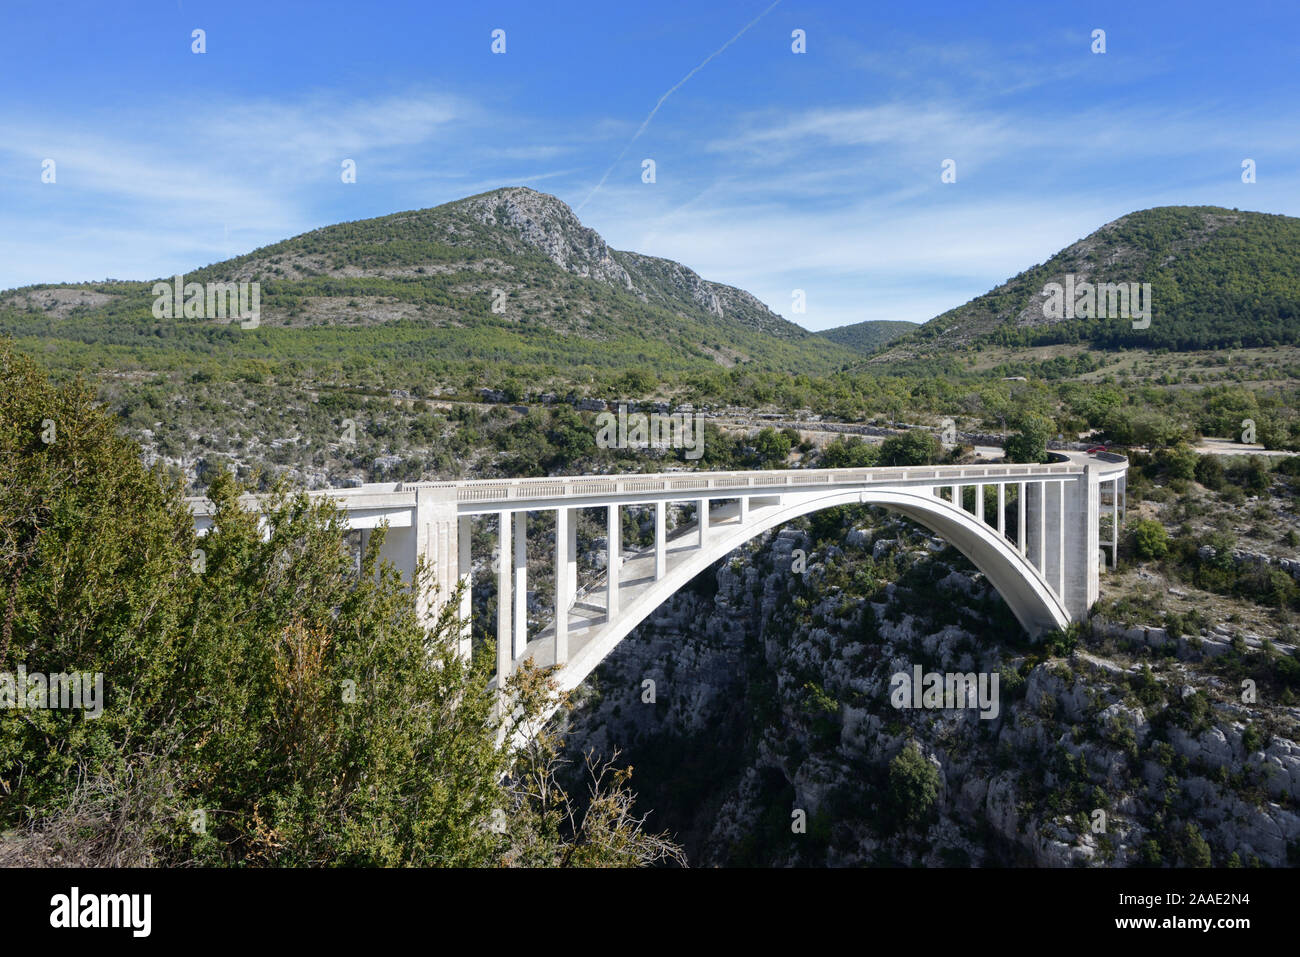 Single Span Reinforced Concrete Bridge, Pont de l'Artuby or Pont de Chaulière (1940) & Peaks or Summits of the Verdon Gorge Park, Var Provence France Stock Photo